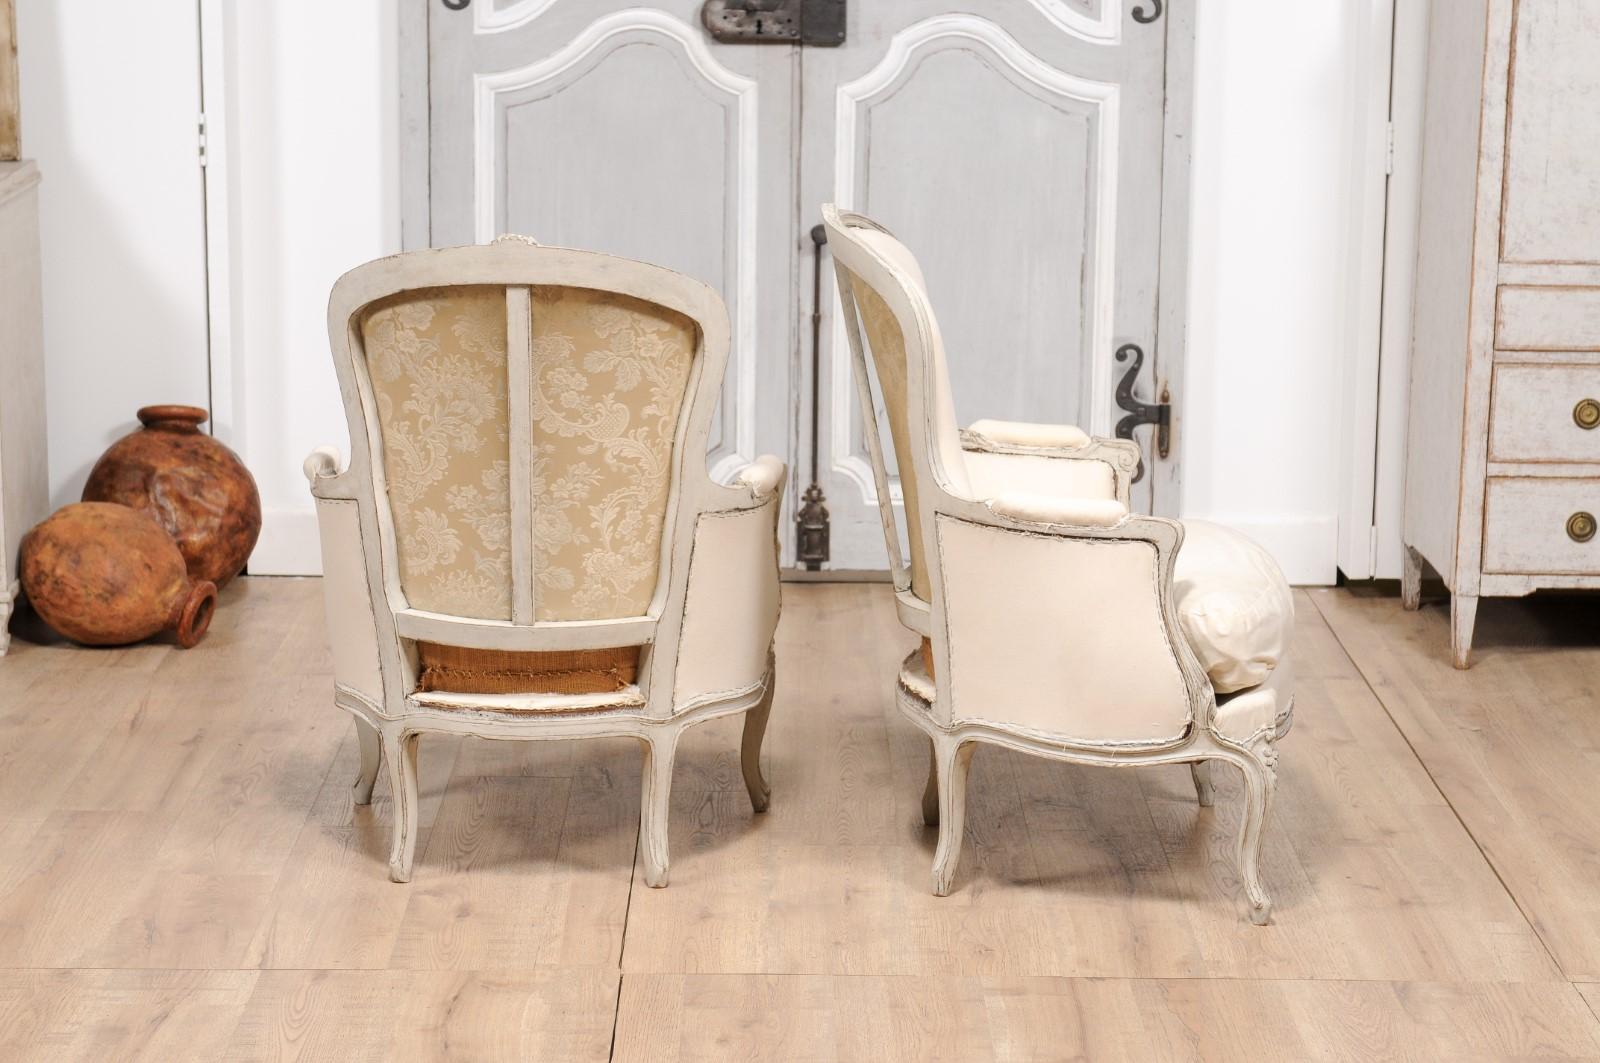 Tissu d'ameublement Paire de chaises Bergères suédoises des années 1890, peintes en gris clair et sculptées, de style rococo